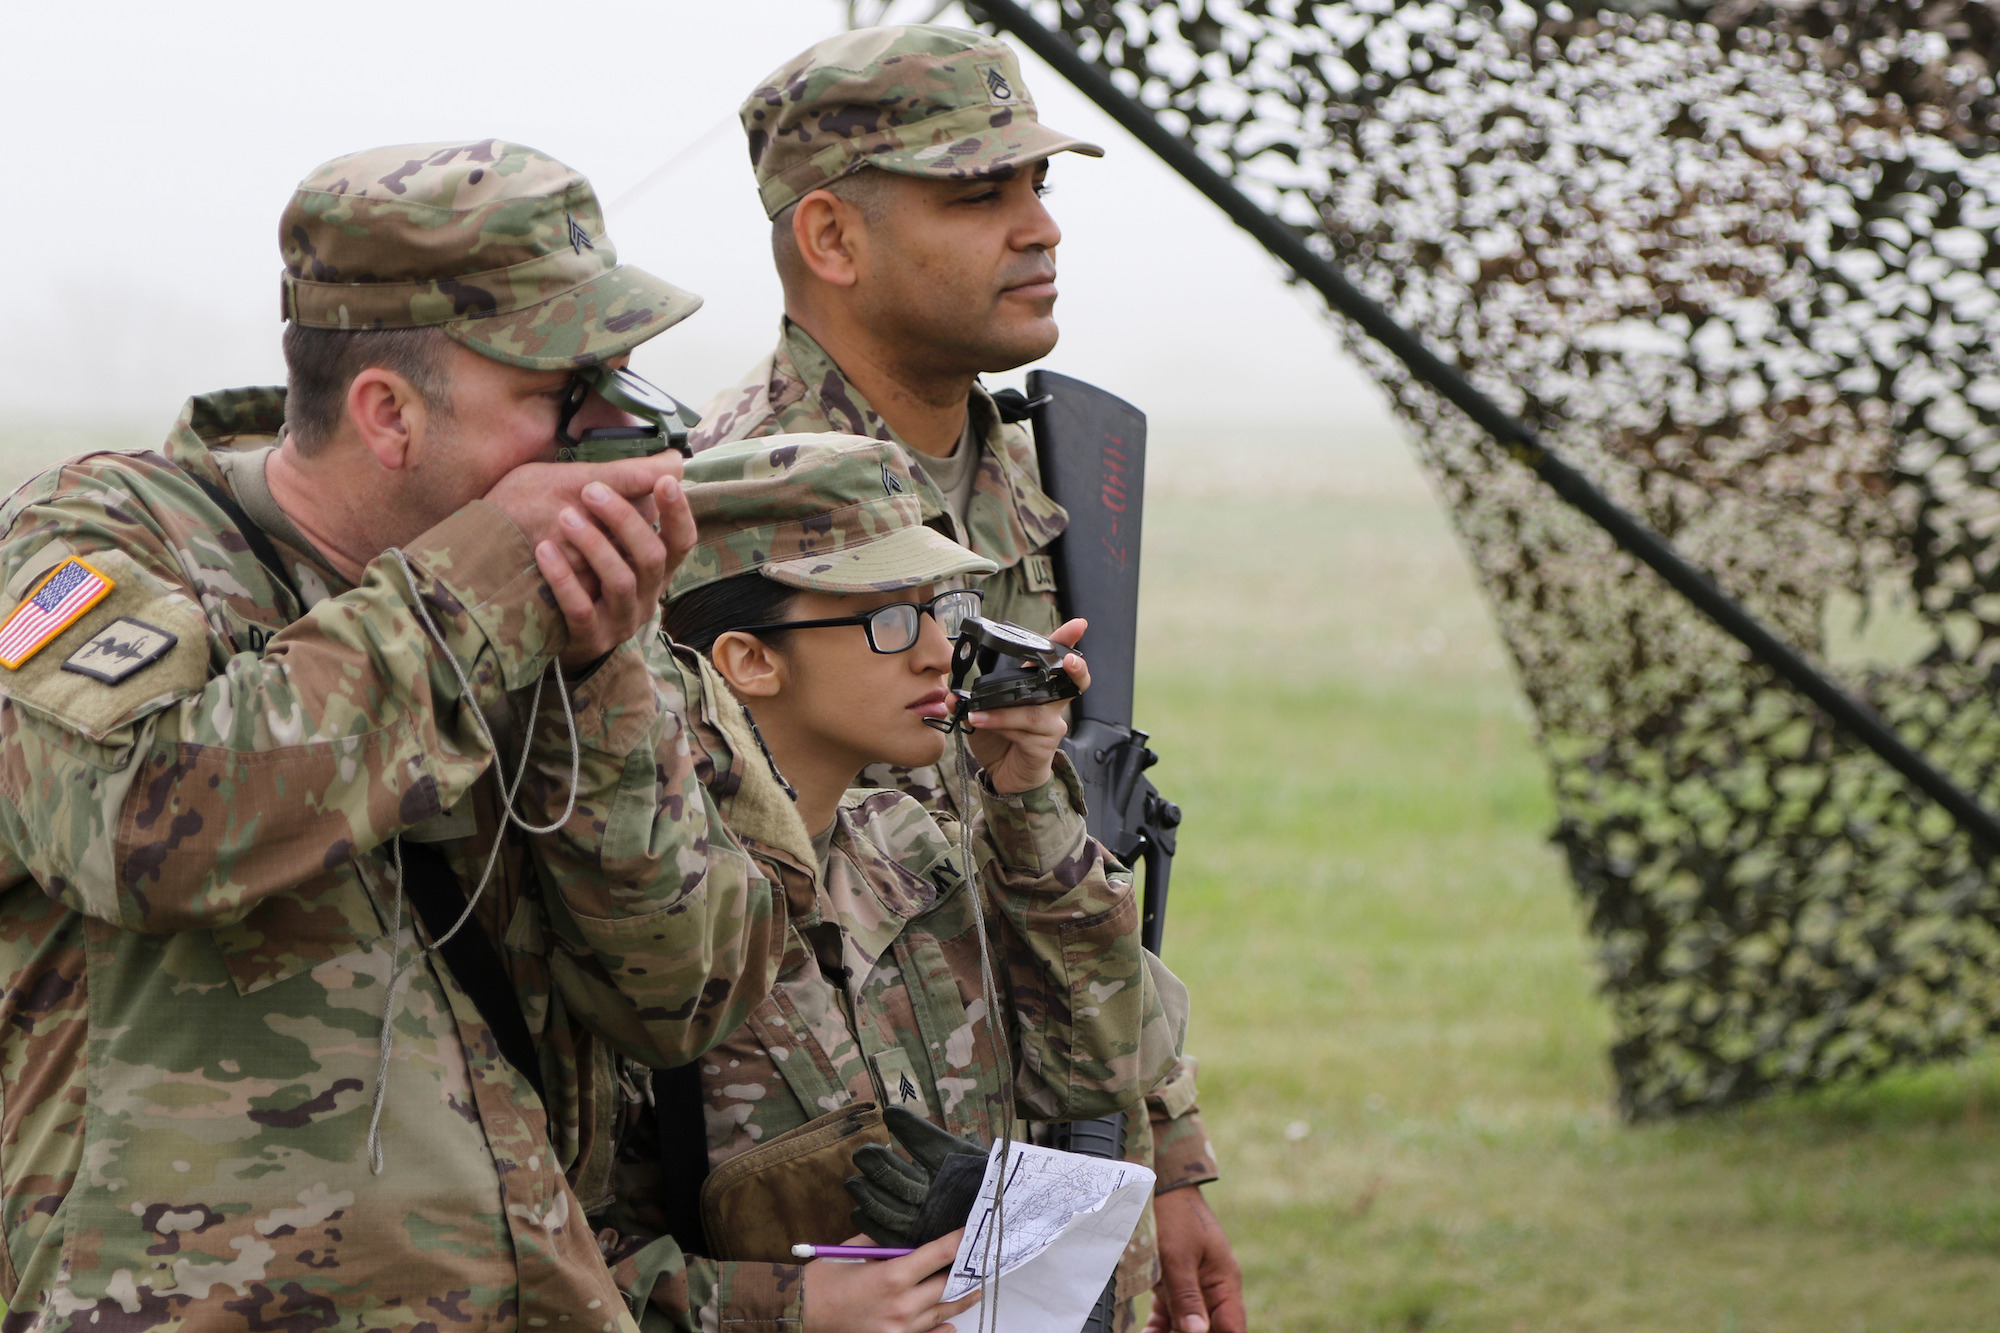 https://images.nationalgeographic.org/image/upload/v1638892481/EducationHub/photos/soldiers-training-in-kansas.jpg